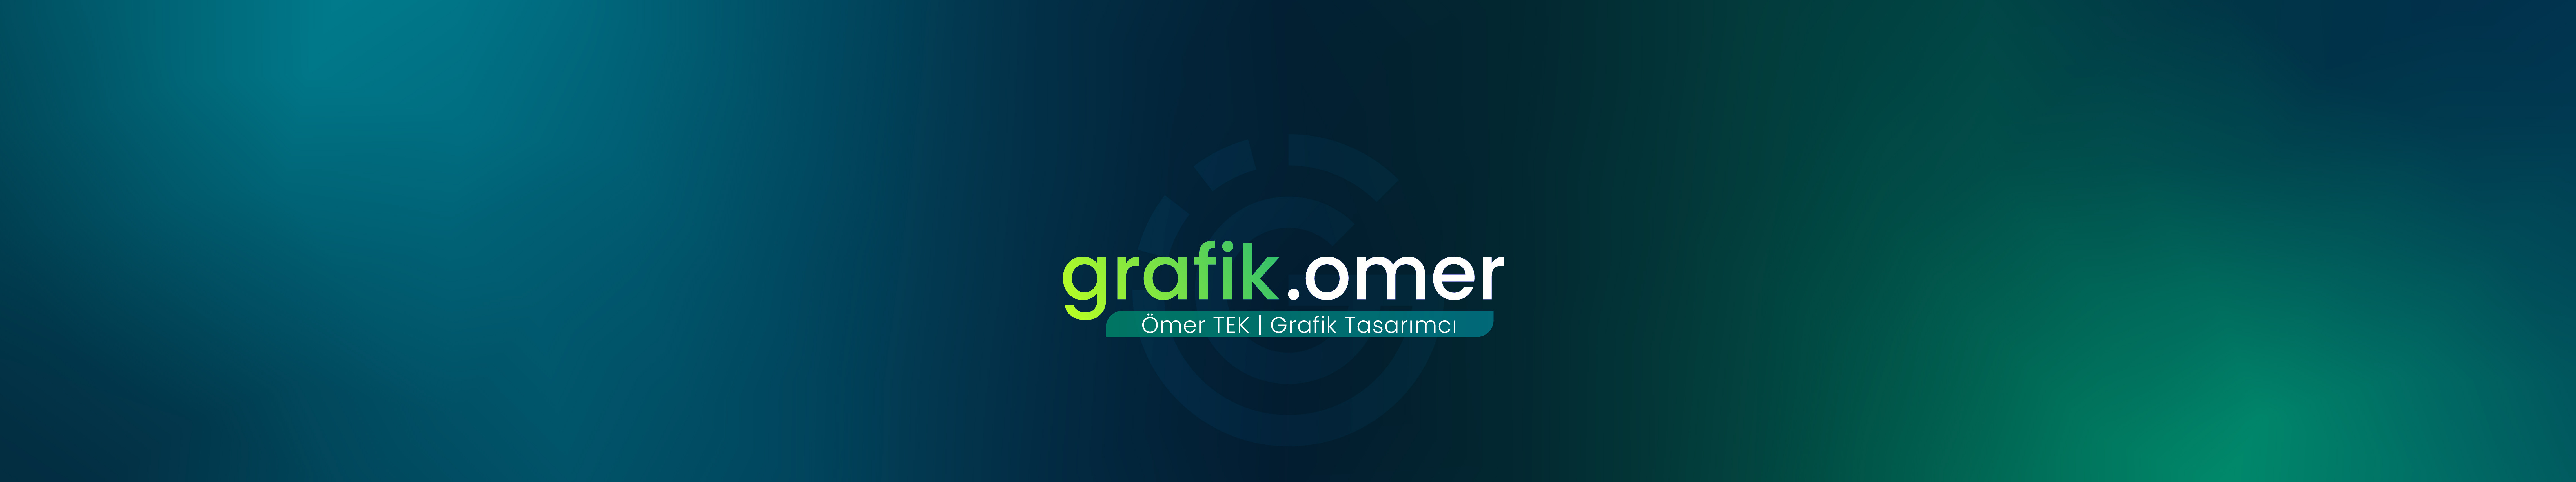 Баннер профиля Ömer Tek